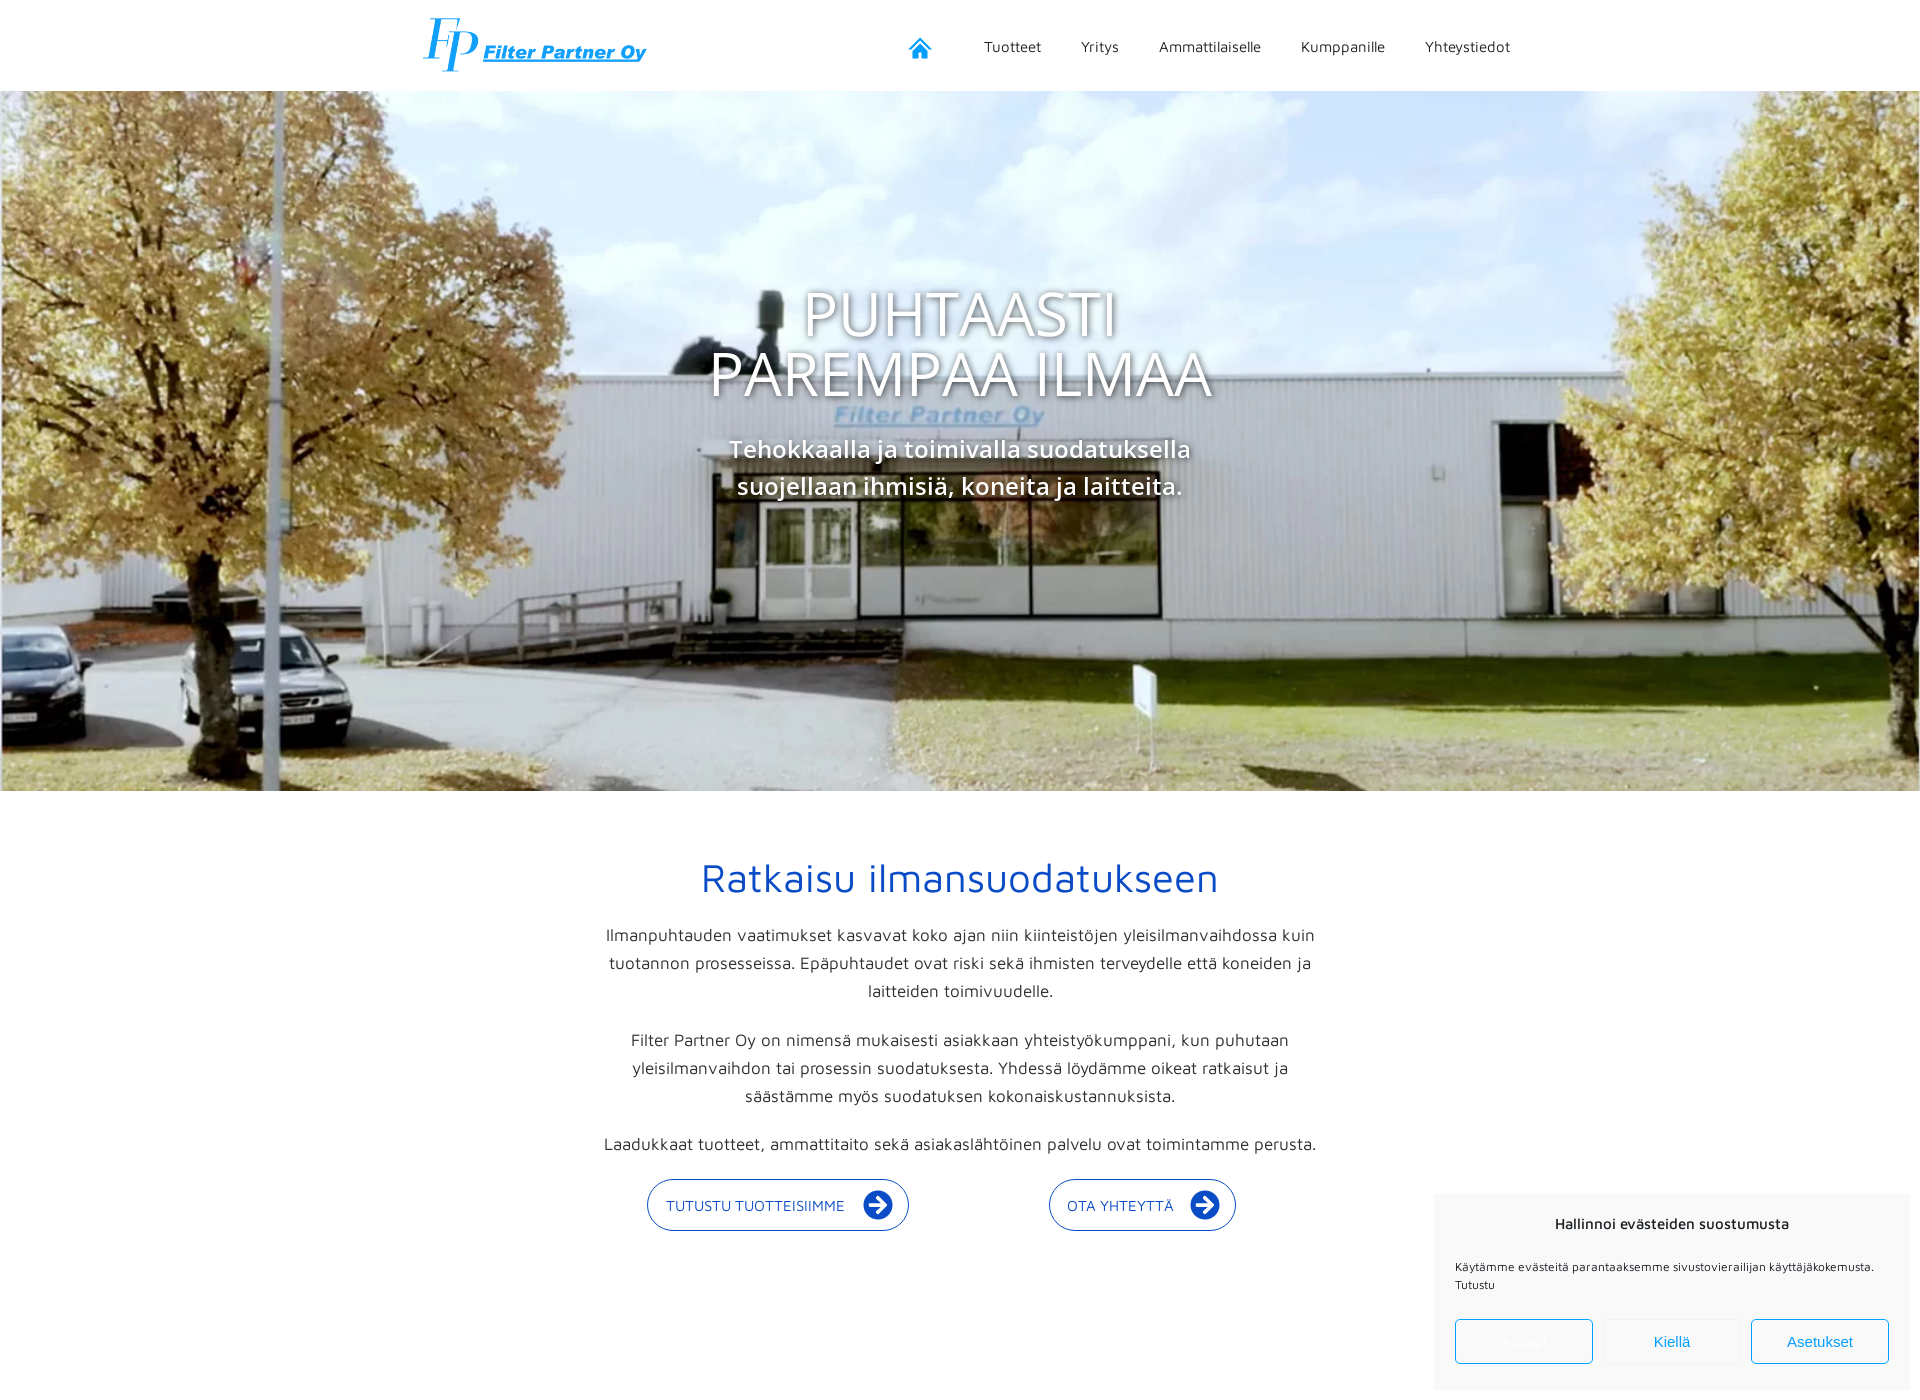 Näyttökuva filterpartner.fi